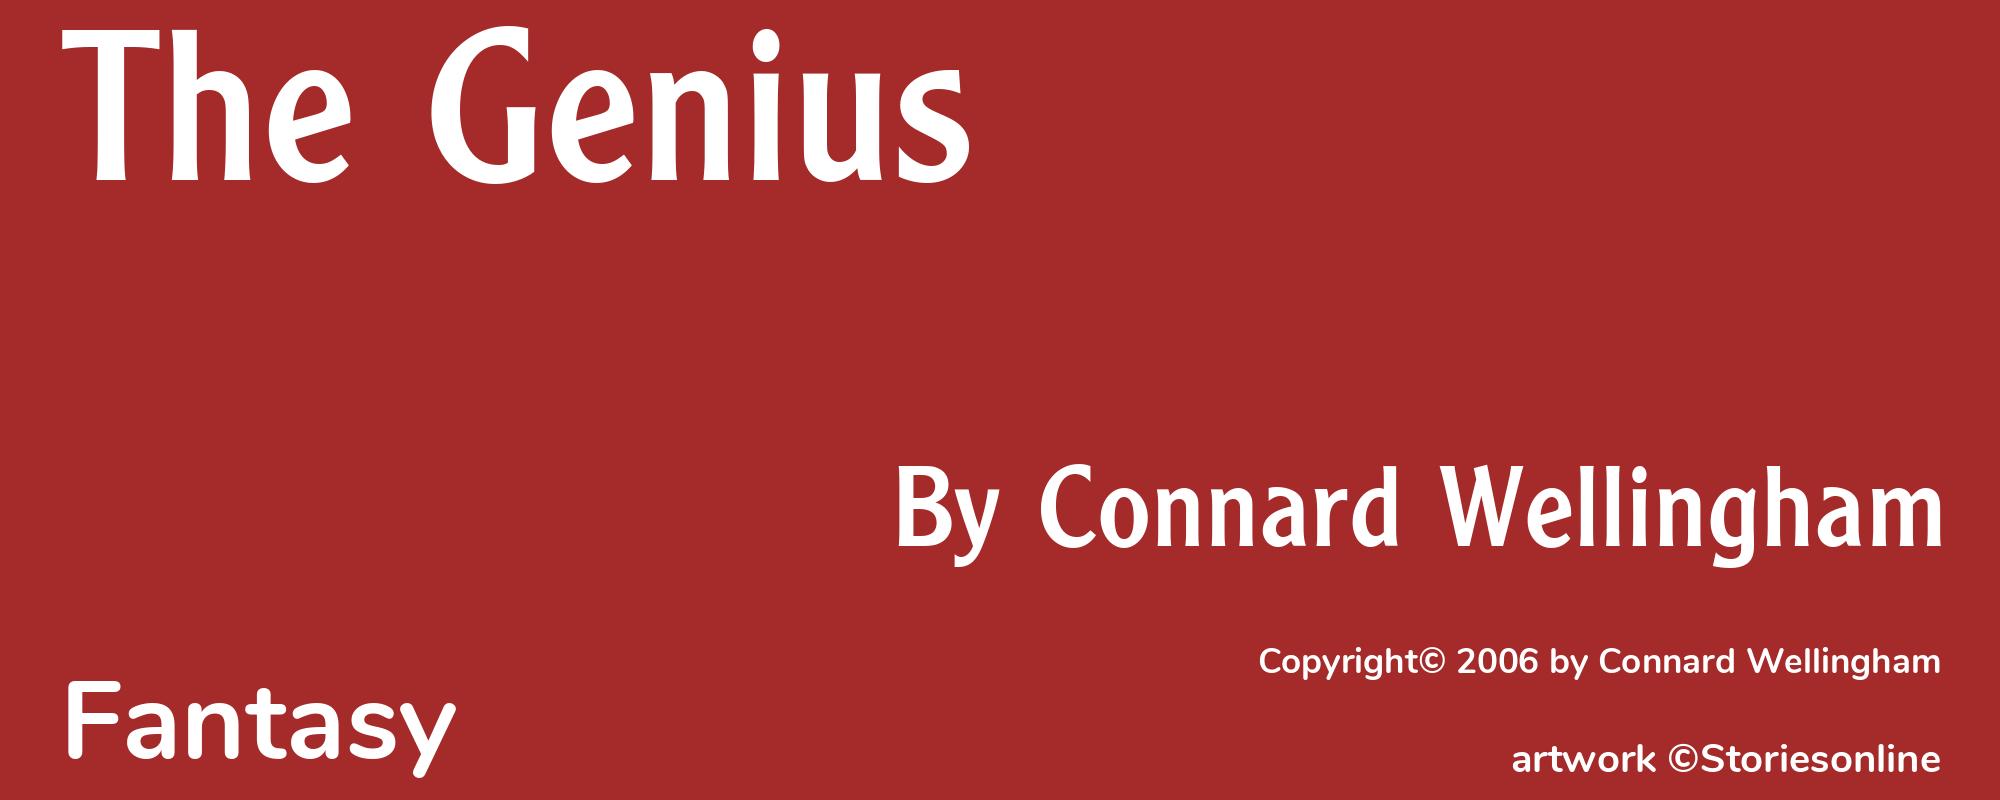 The Genius - Cover